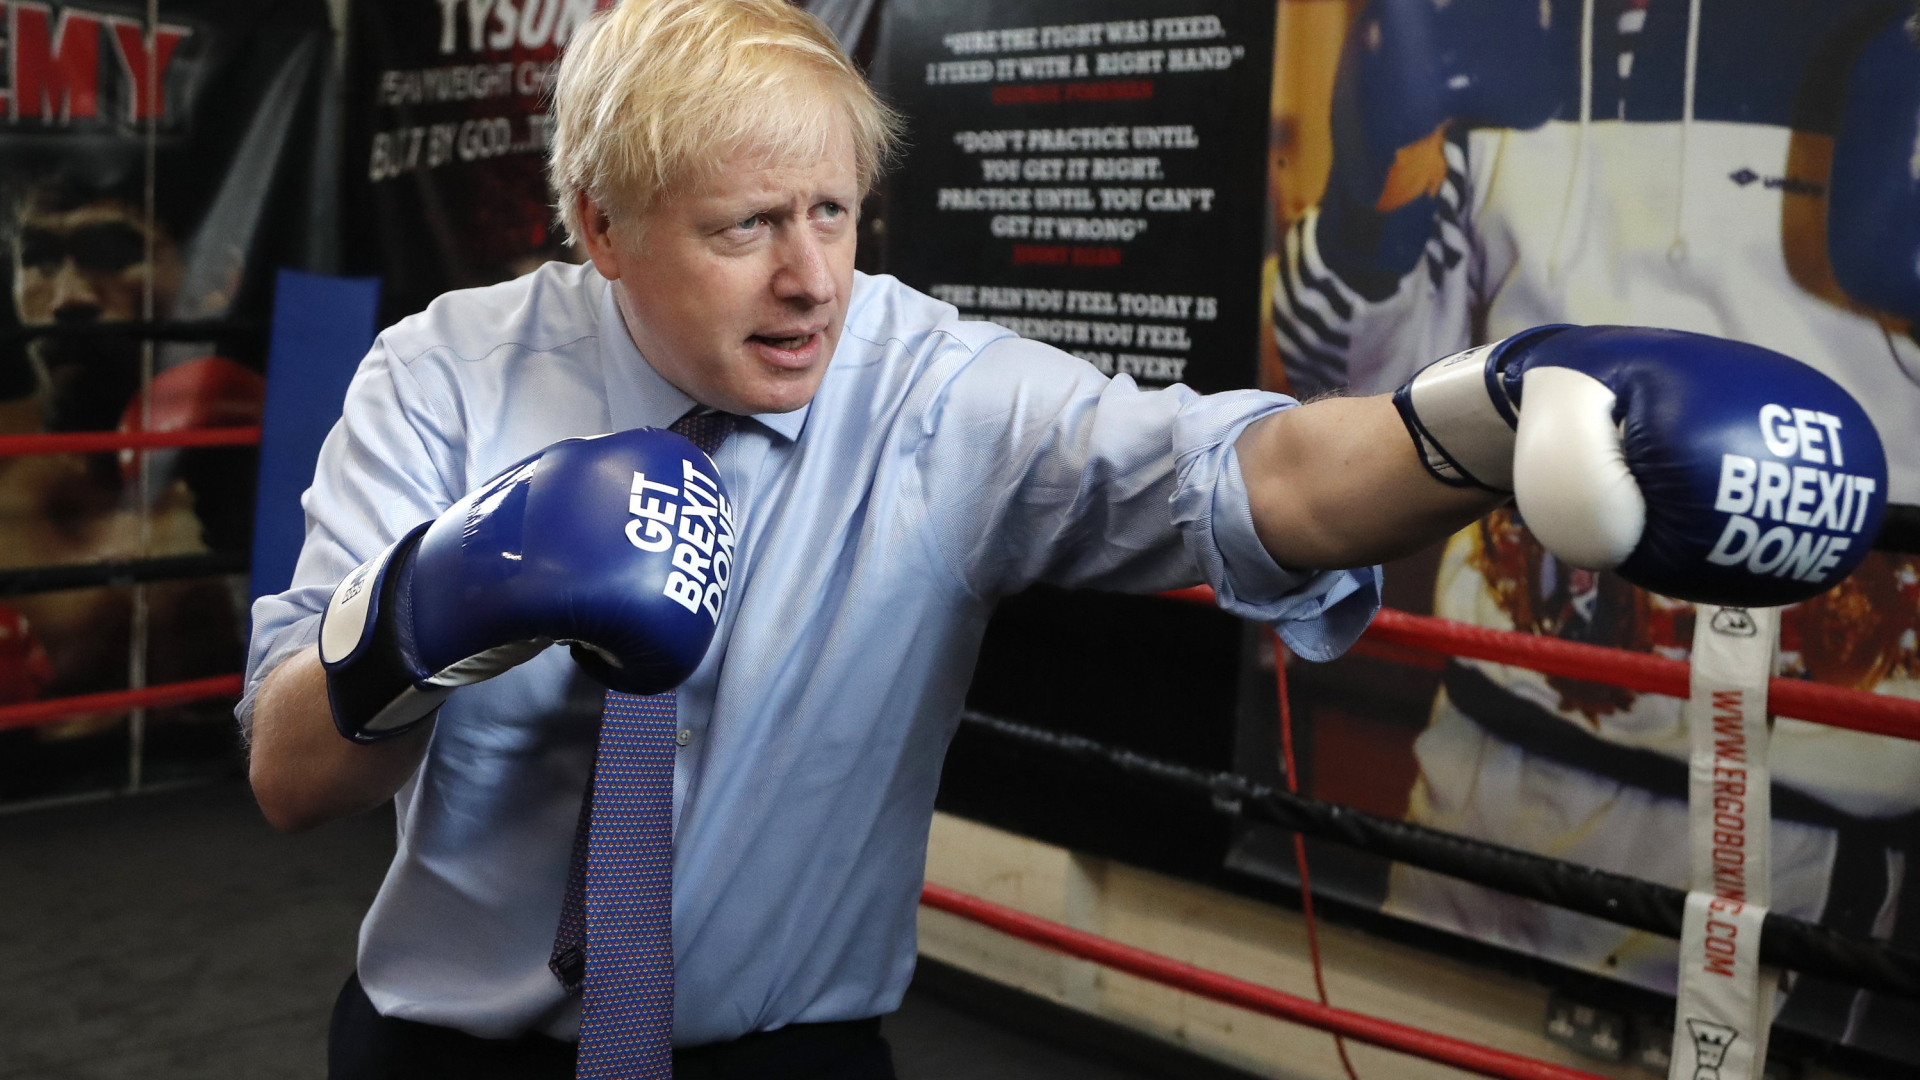 Großbritanniens Premier Boris Johnson mit Boxhandschuhen, auf die der Slogan "Get Brexit Done" gedruckt ist.